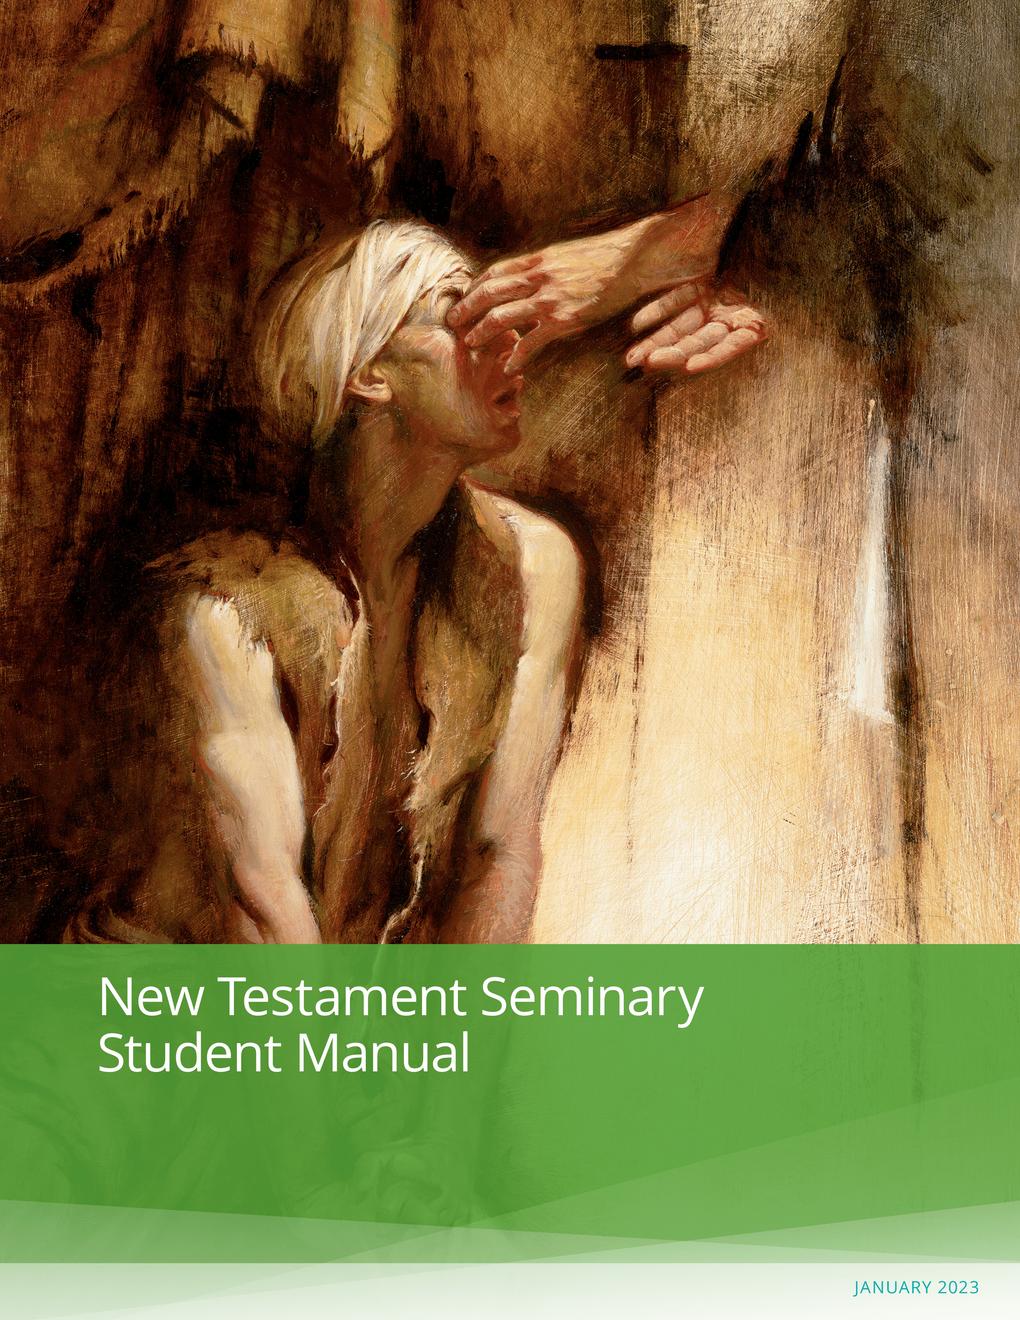 Manuali i Nxënësit të Seminarit për Dhiatën e Re